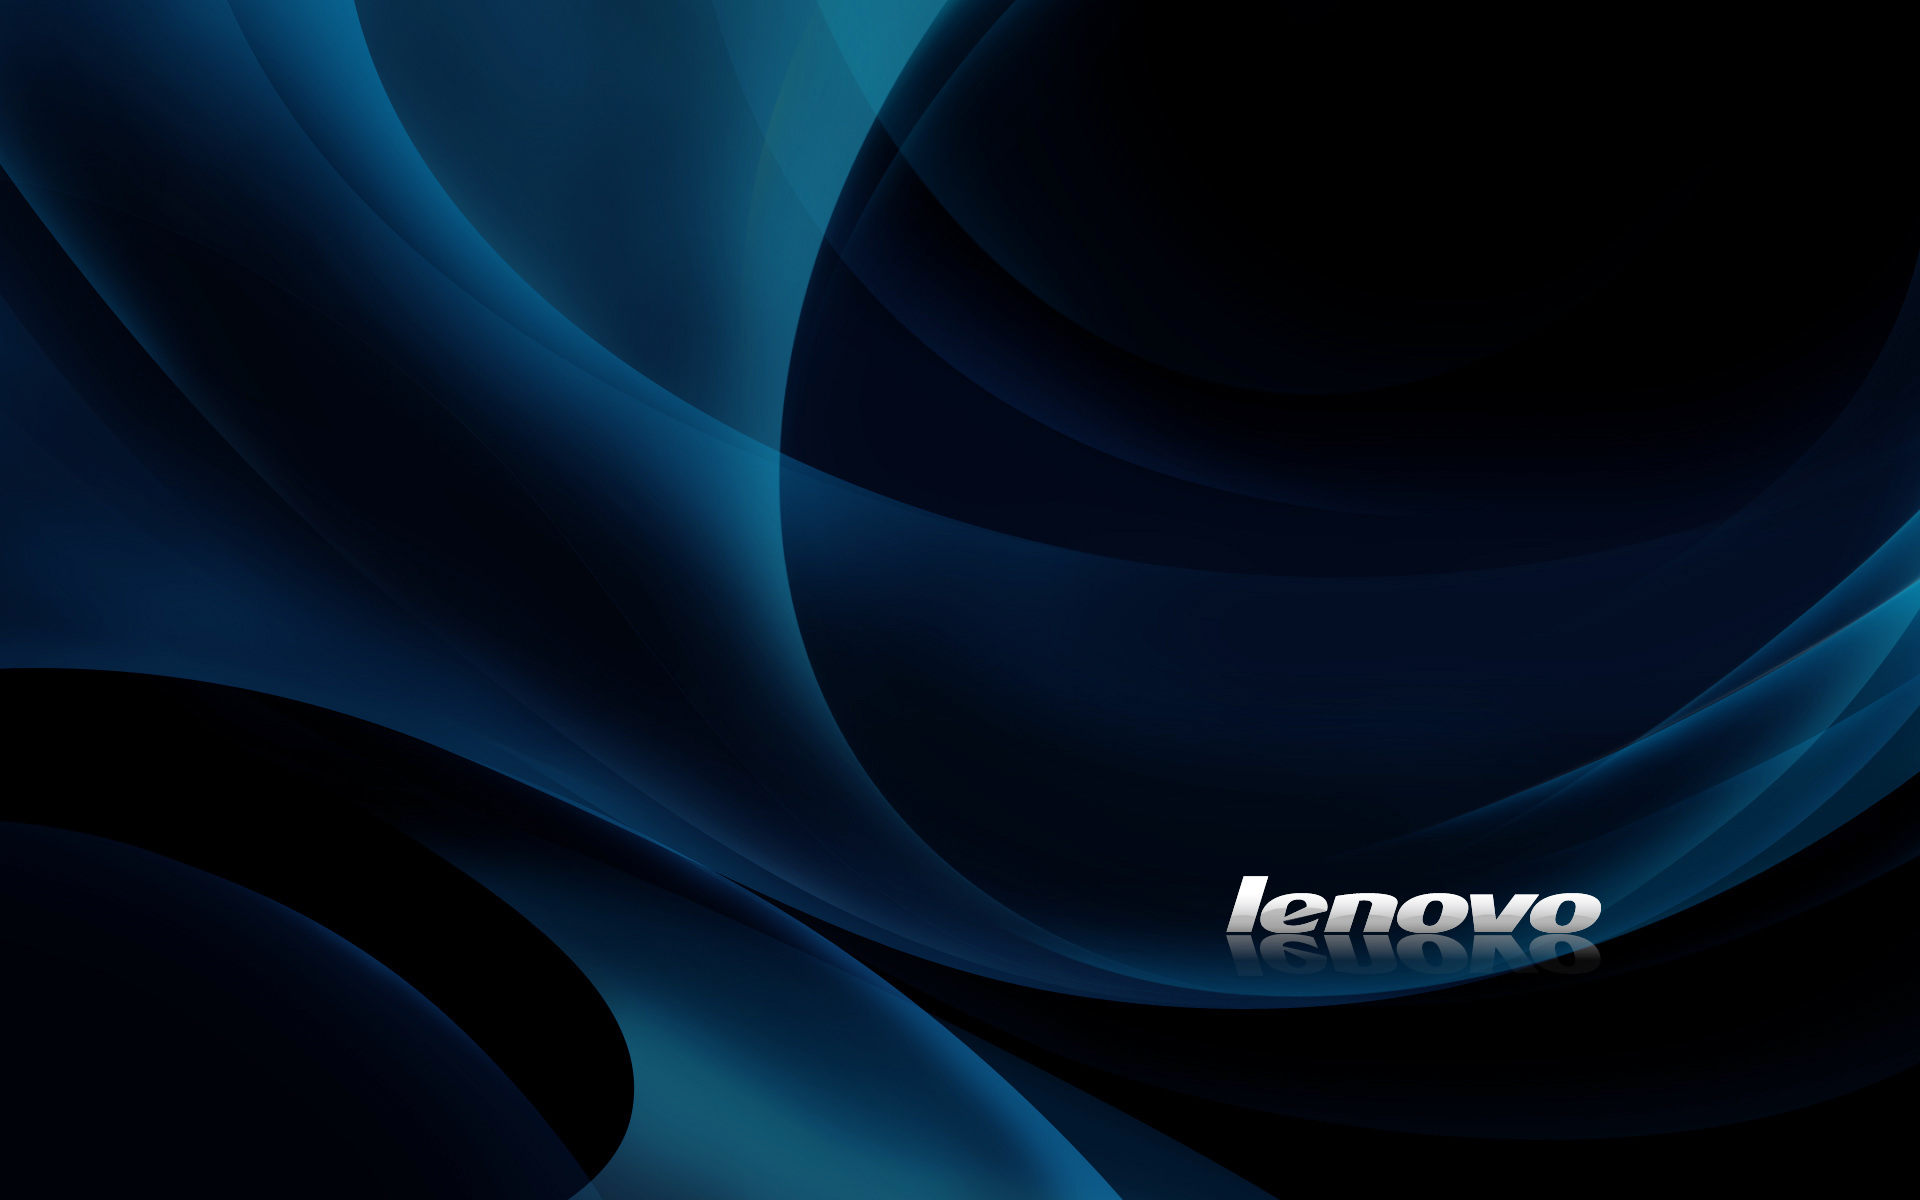 Hình nền  1920x1080 px màu xanh da trời tối Lenovo 1920x1080   CoolWallpapers  1201888  Hình nền đẹp hd  WallHere